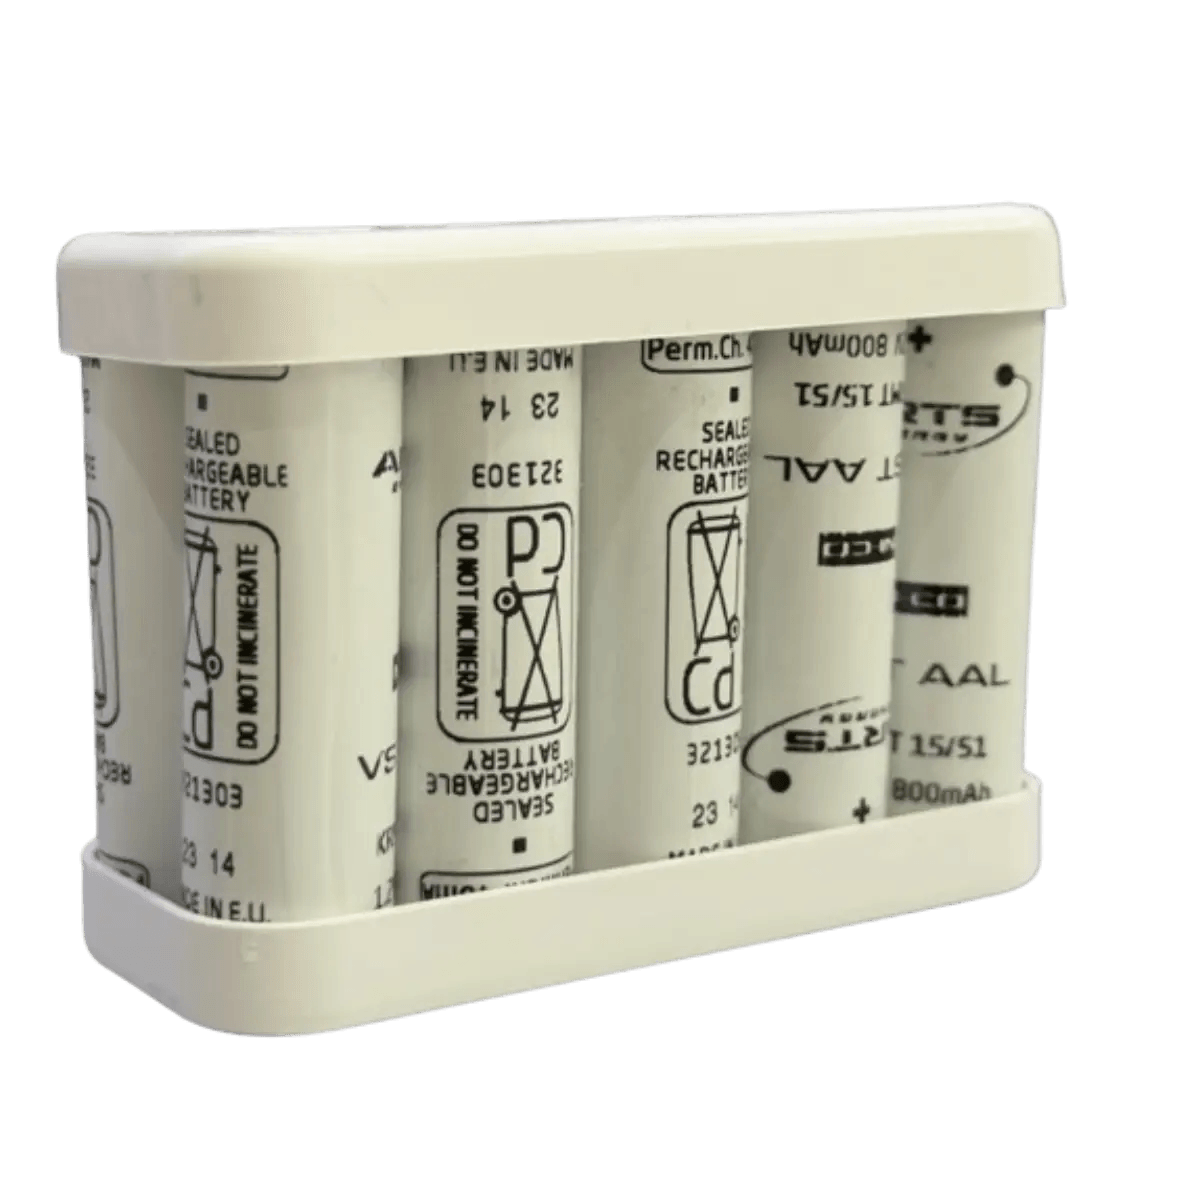 Batterie NiCd pour éclairage de secours BAES 10VSTAA SAFT 805744D